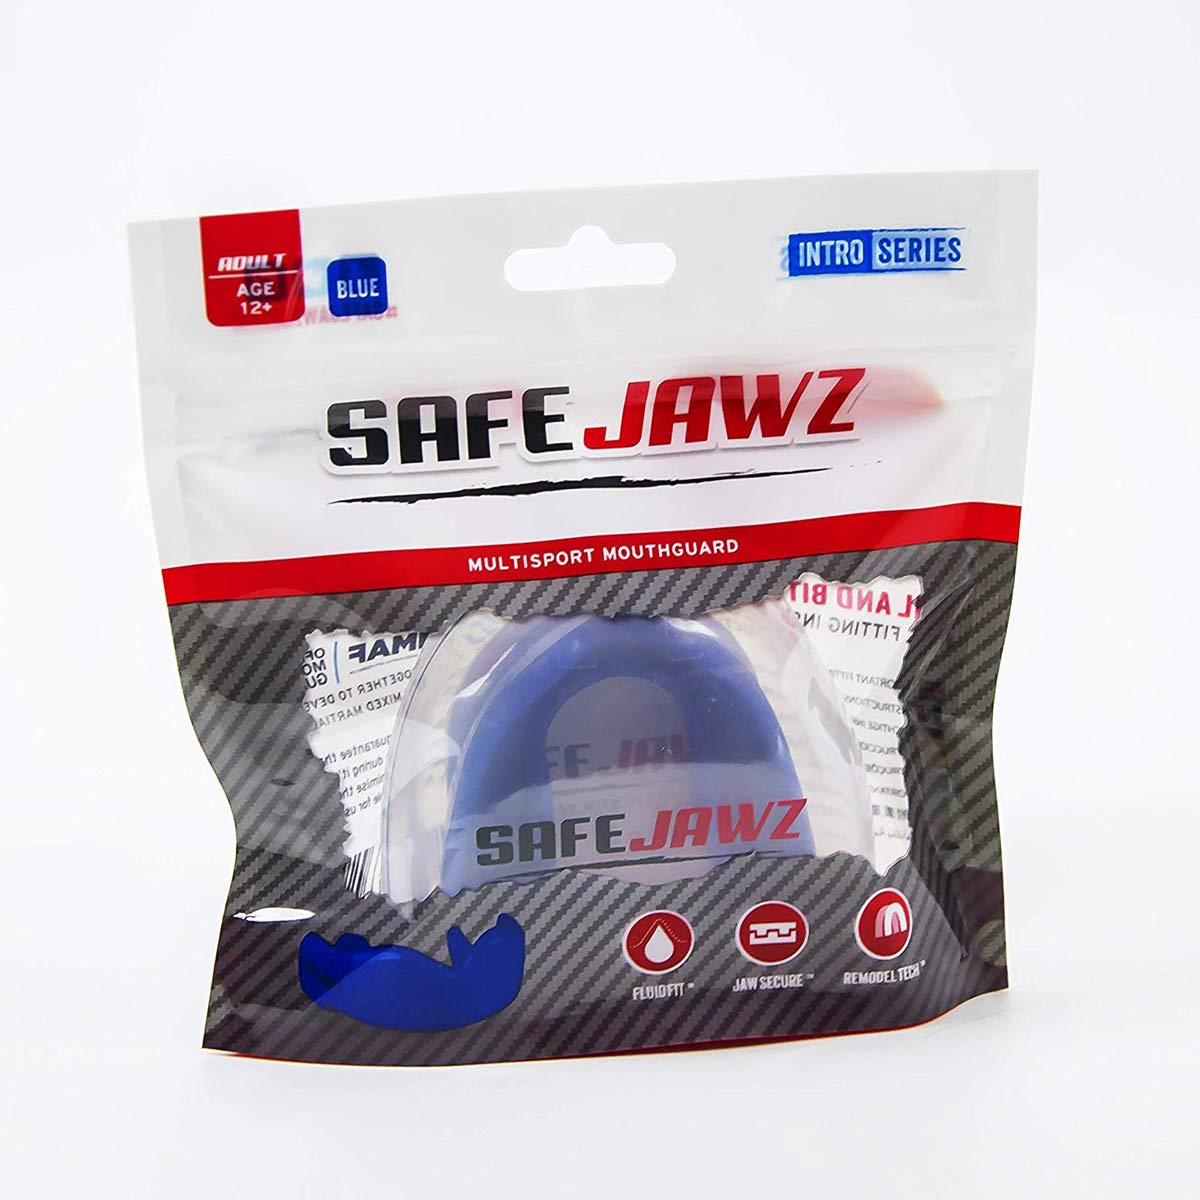 SAFEJAWZ® Intro Series - Blue - SAFEJAWZ gum shield